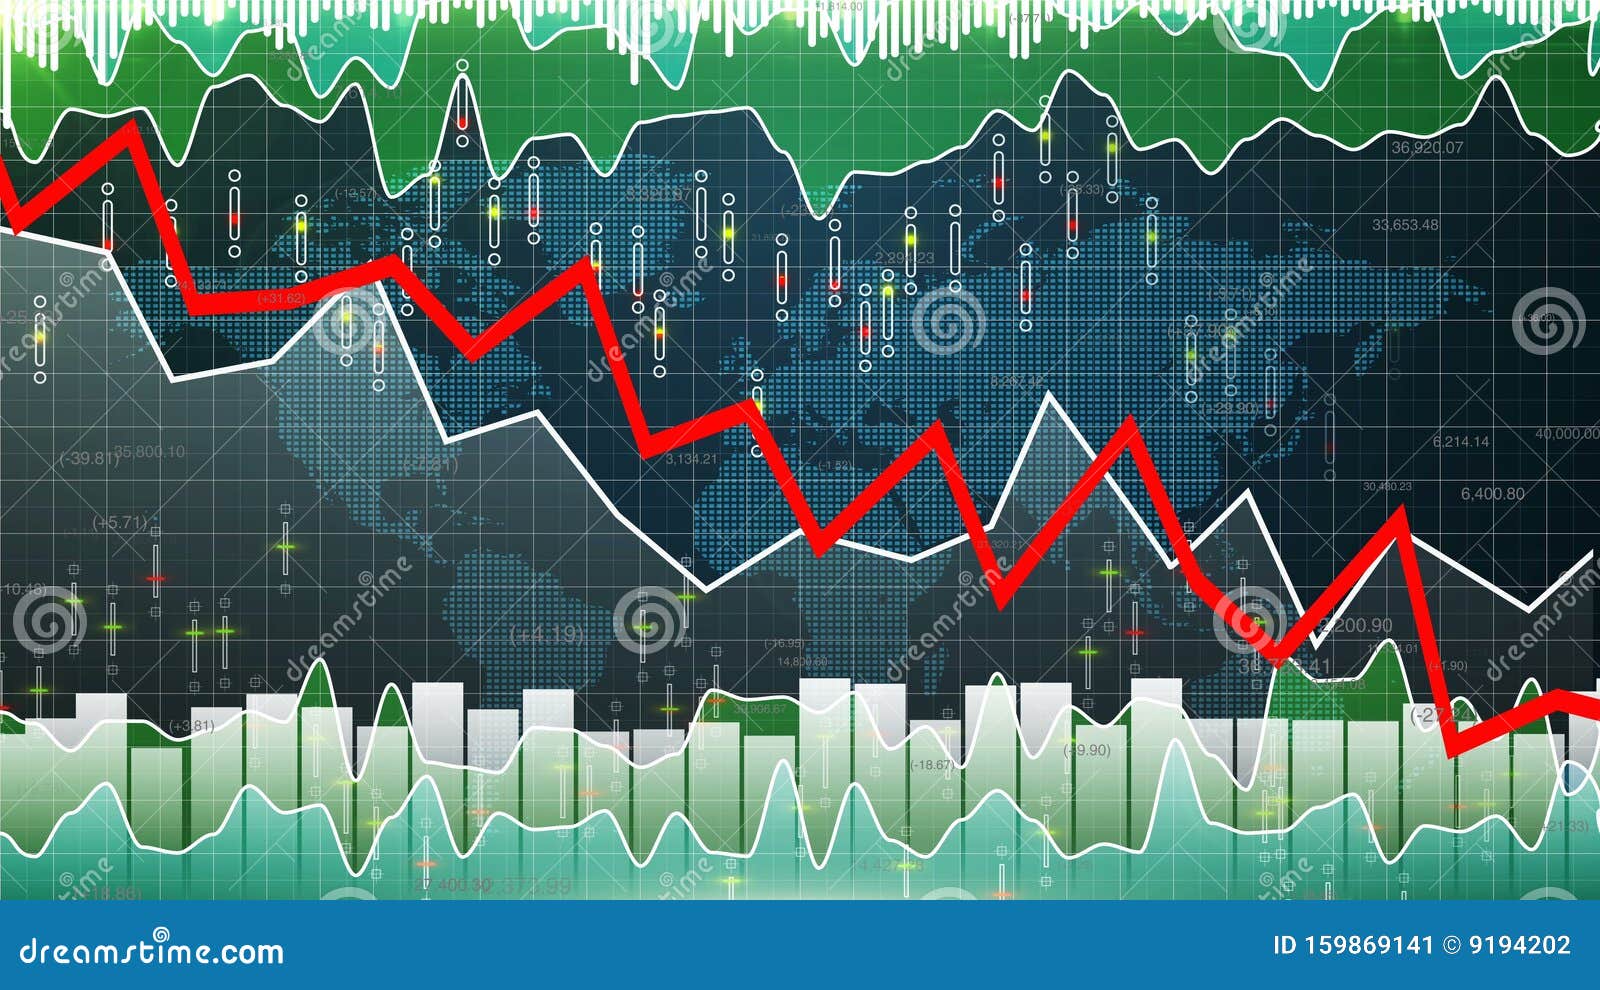 Down market. Графики финансовых рынков. Падение рынка. Рынок падает. Фондовый рынок вектор.